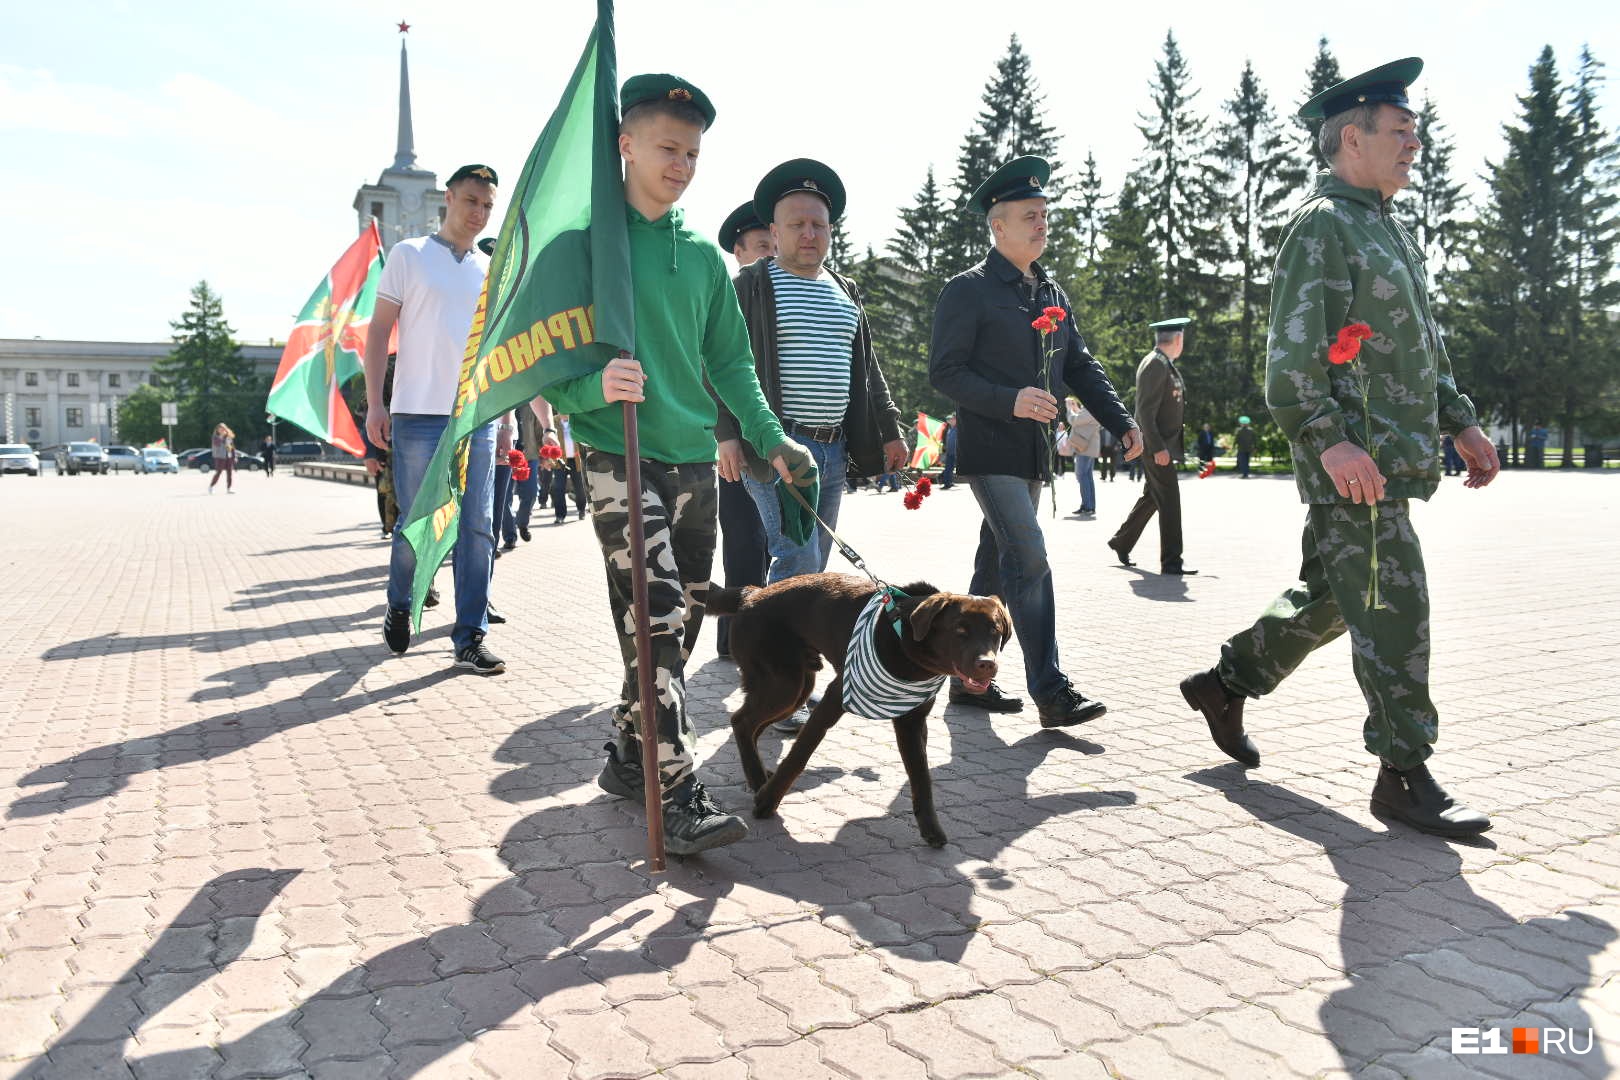 Екатеринбург заполнили военные в зеленых фуражках с собаками